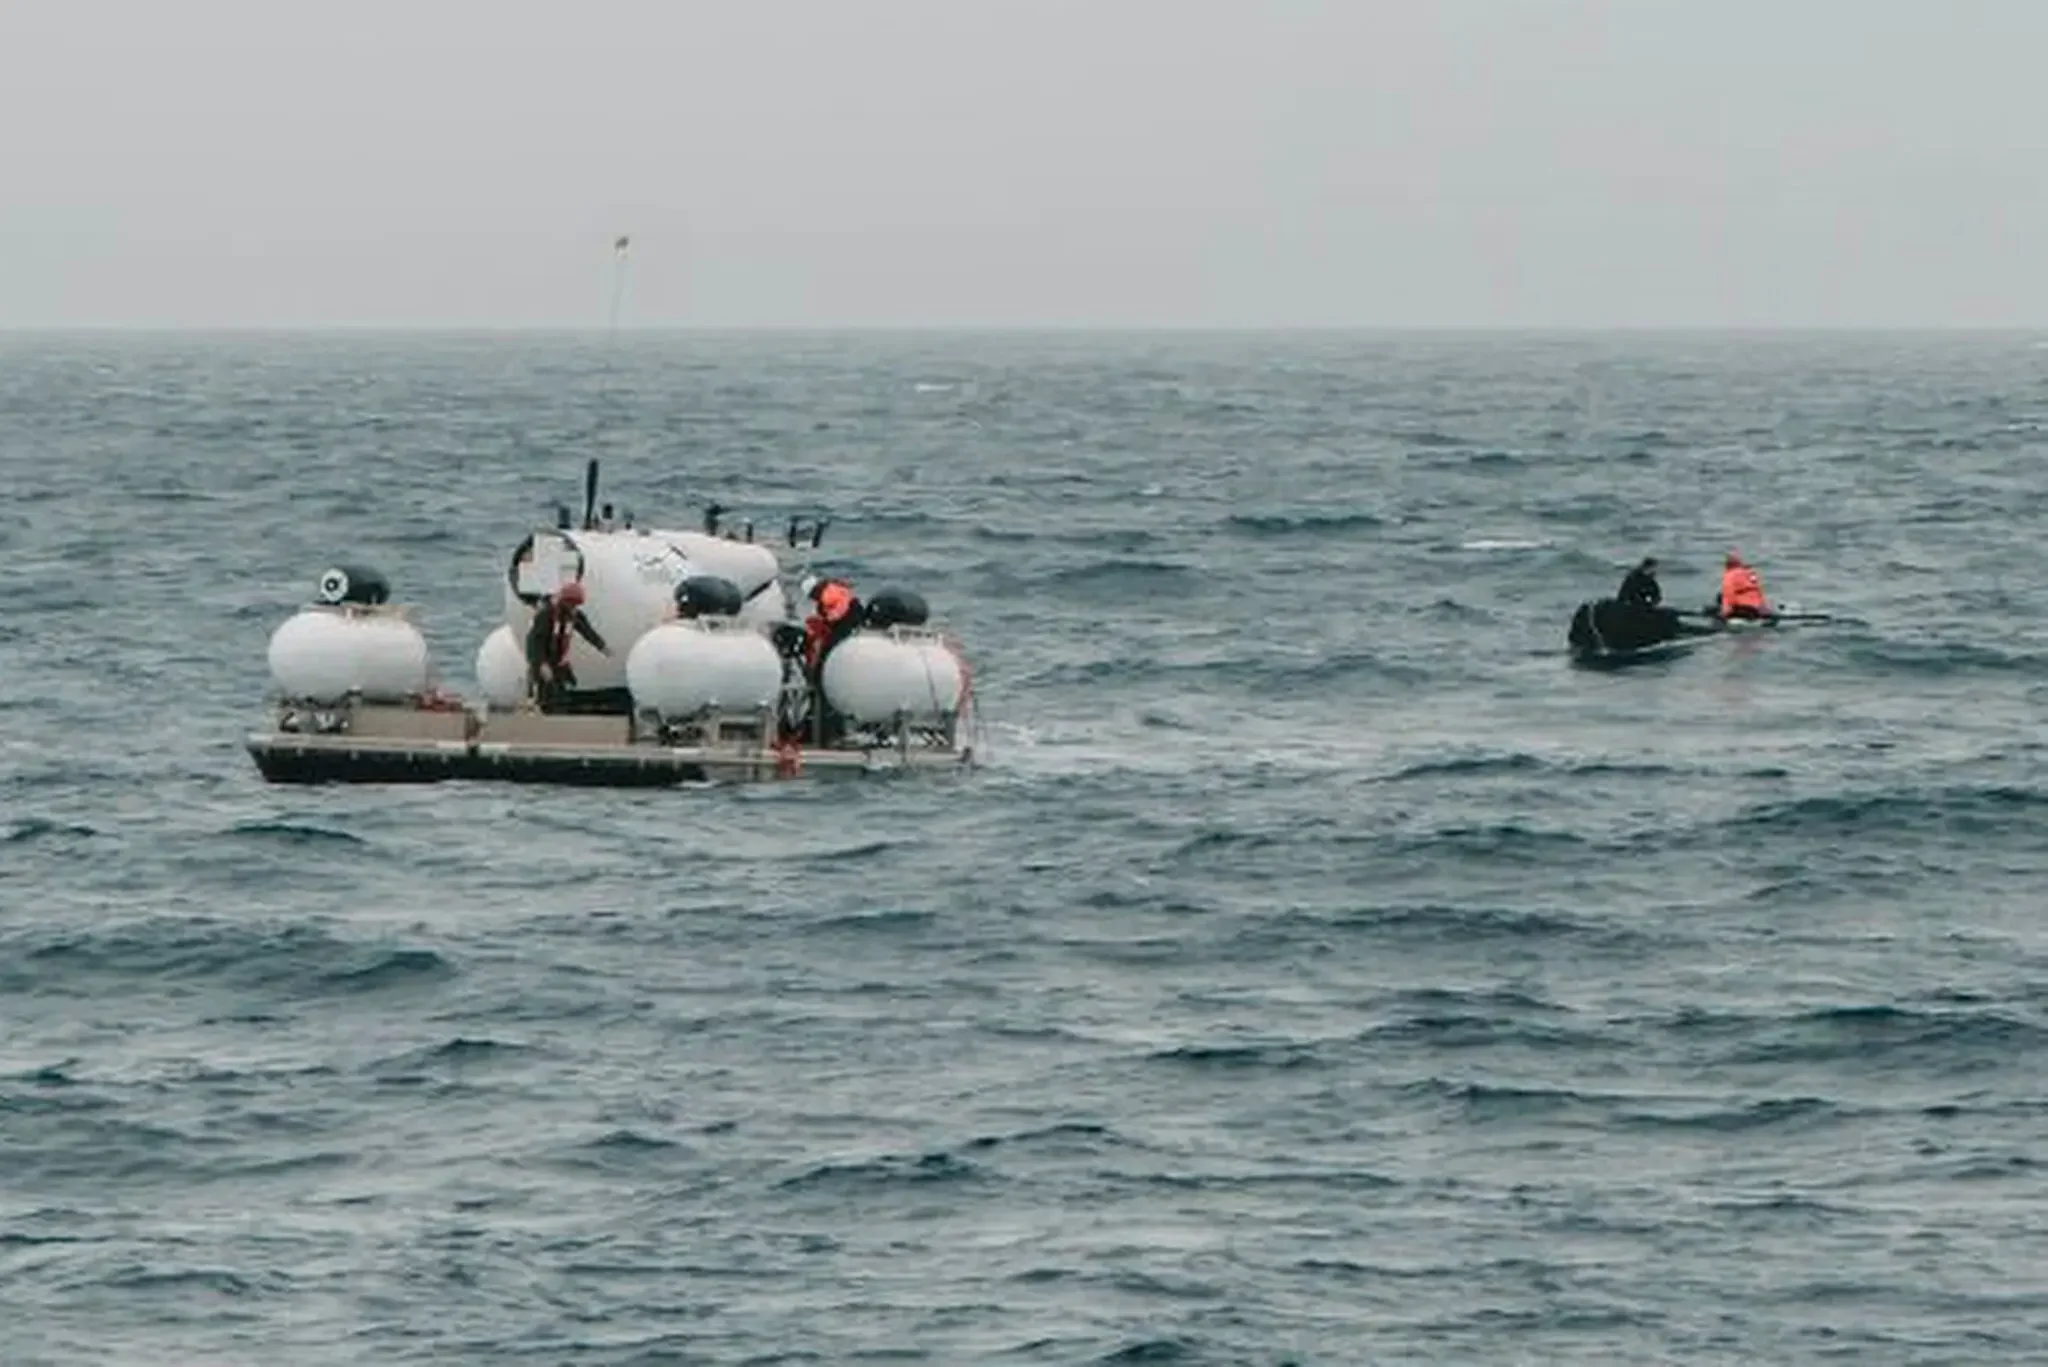 El Titan flotando antes de iniciar su descenso, el 18 de junio (Action Aviation, via Associated Press)